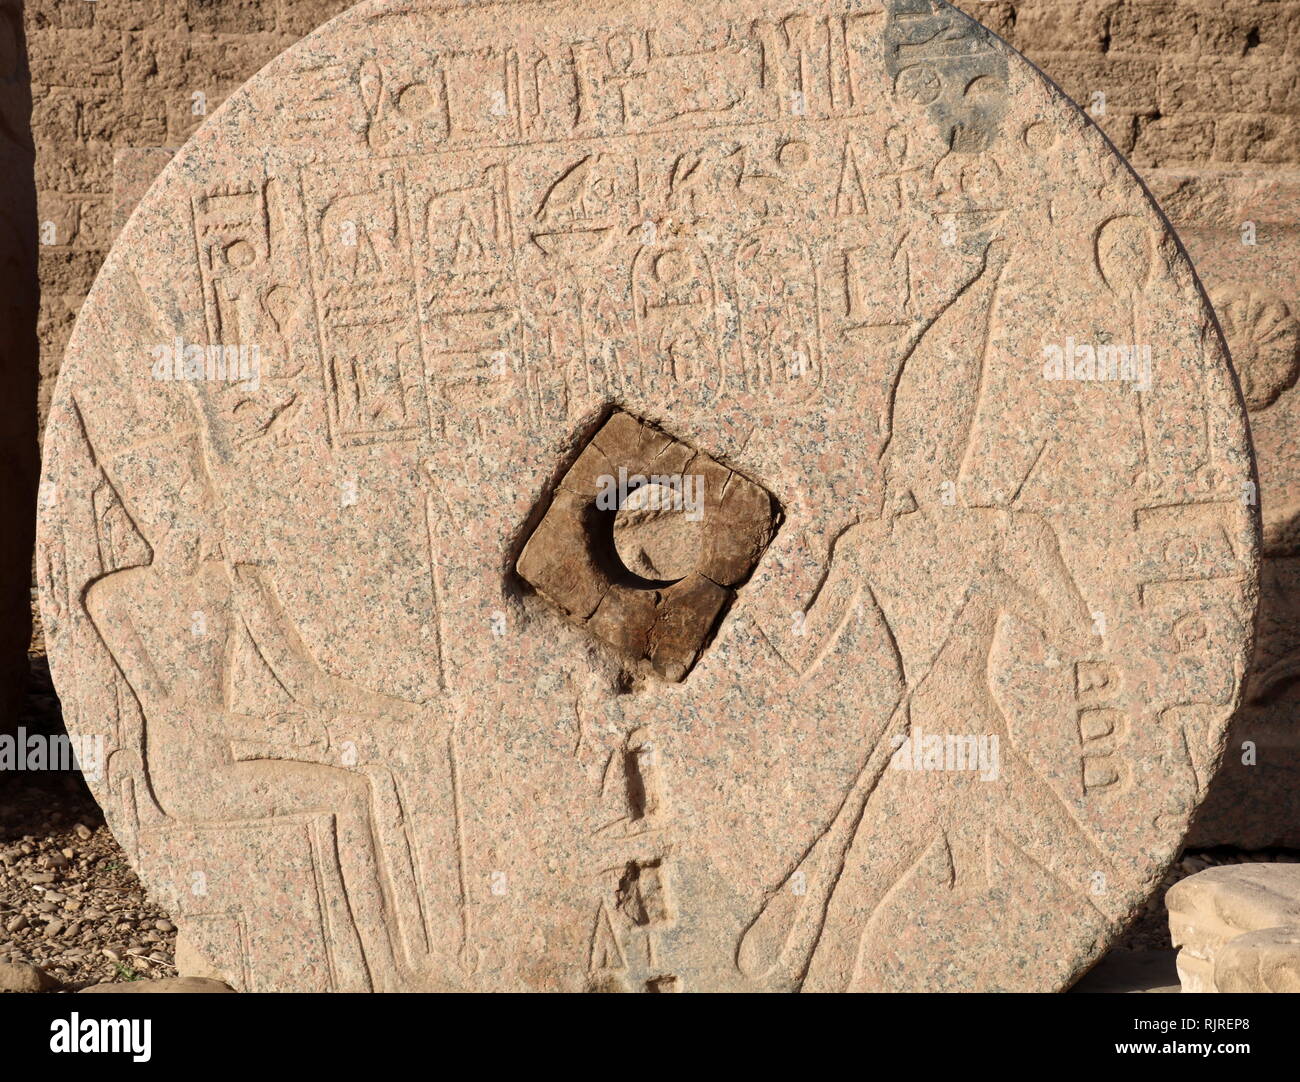 Stele geschnitzt auf einer Getreidemühle Stein, Darstellung von Tutmosis III und der Gott Amun, im Tempel der Hathor, Dendera Ägypten. Thutmose III (Tutmosis III) war der sechste Pharao der achtzehnten Dynastie. Offiziell, Thutmosis III. regiert Ägypten für fast 54 Jahre und seine Herrschaft wird in der Regel vom 24. April 1479 v. Chr. bis zum 11. März 1425 v. Chr. datiert Stockfoto